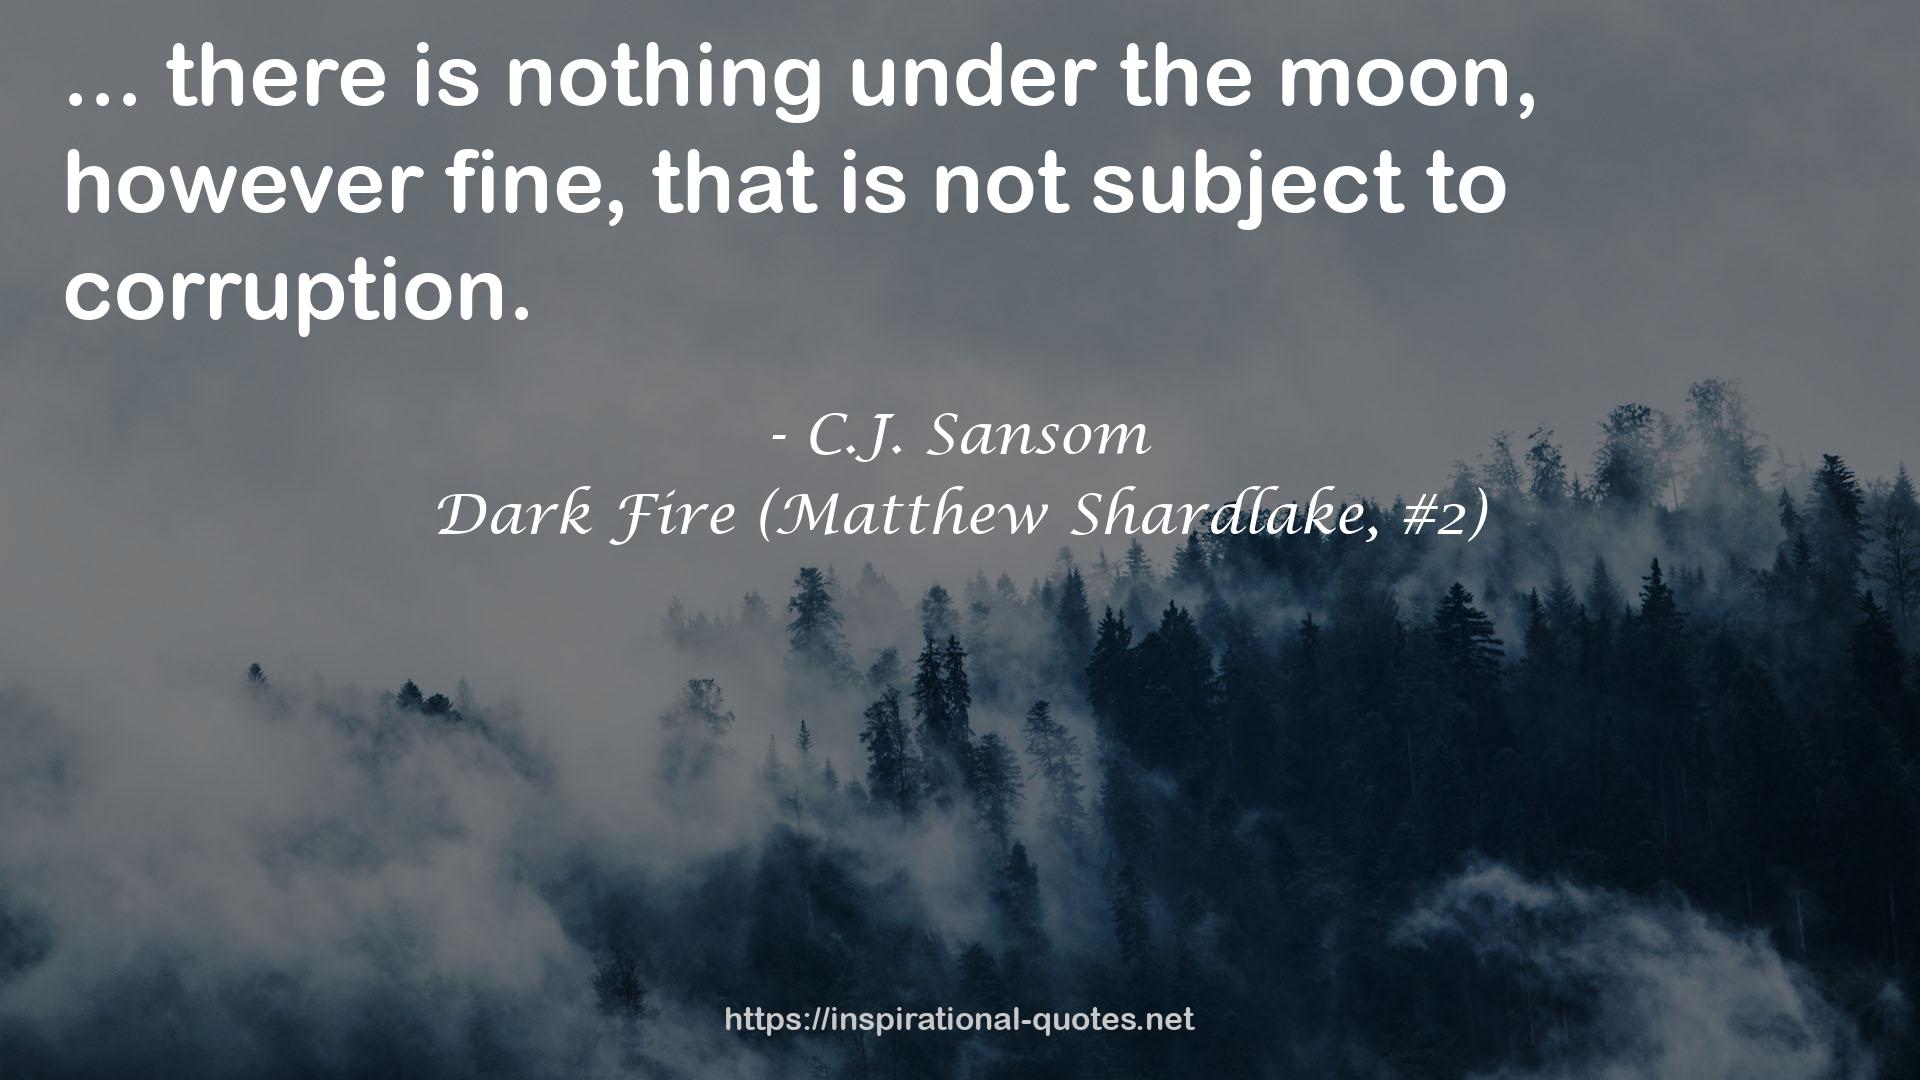 Dark Fire (Matthew Shardlake, #2) QUOTES